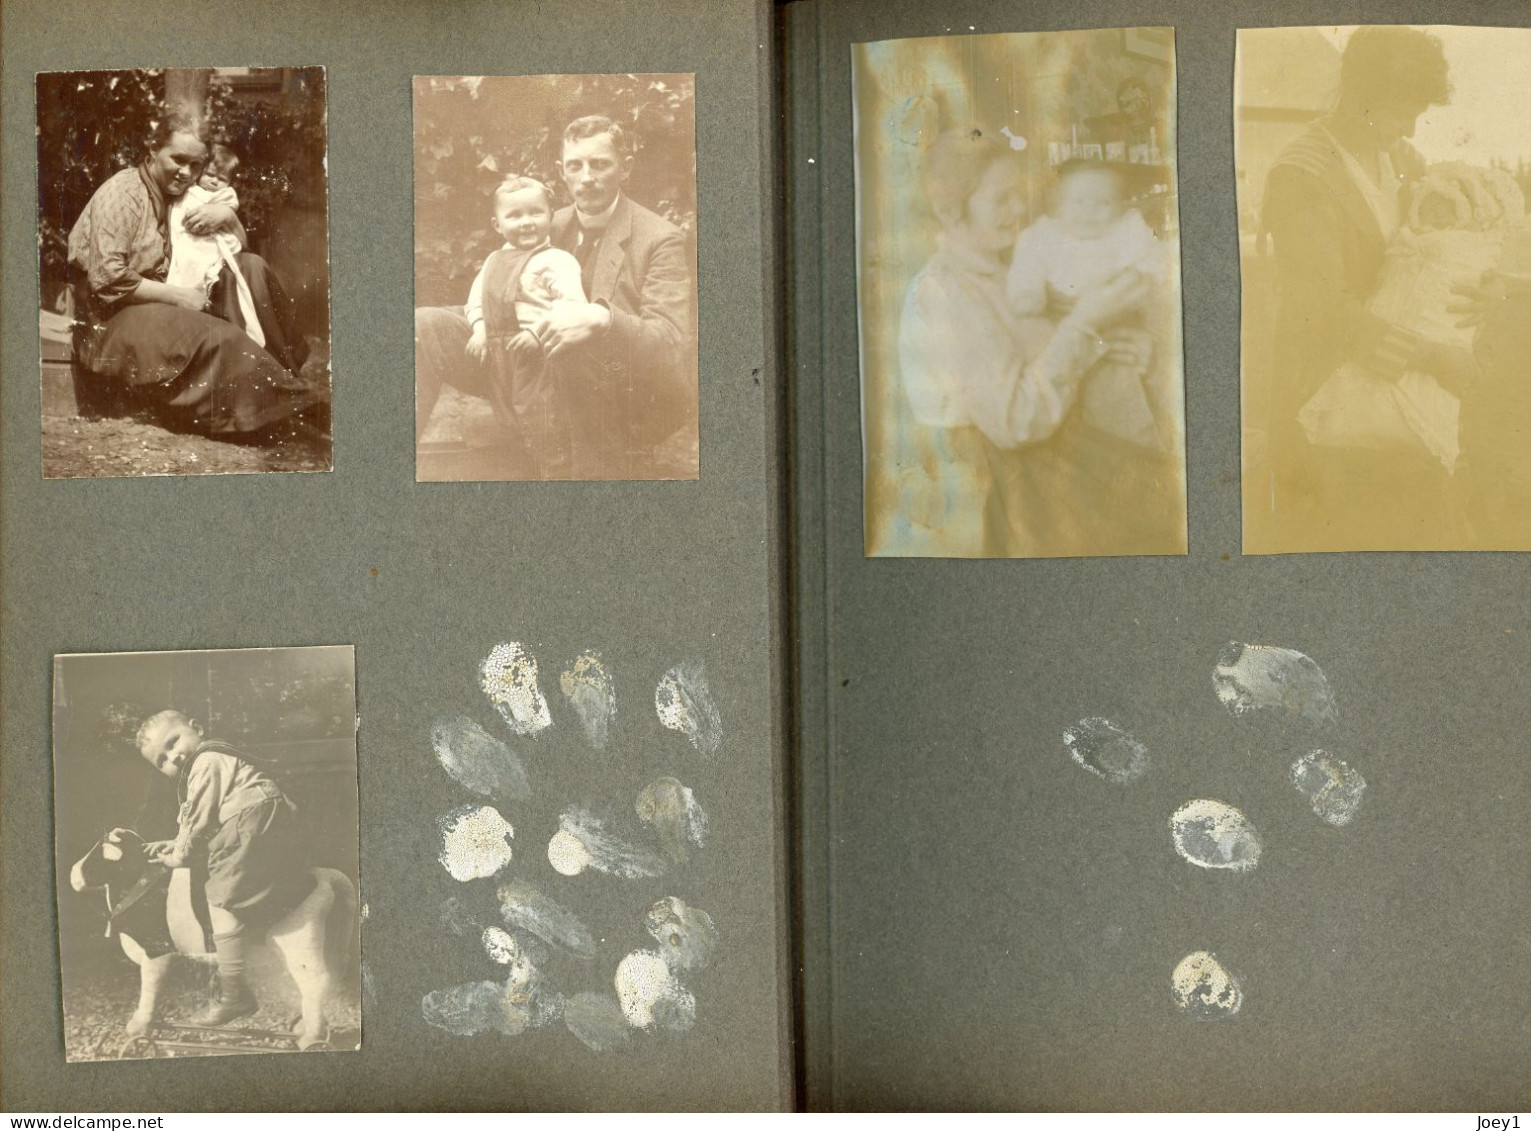 Norvège Album photos famille de Norvège,Finlande? albuminé, début 20ème siècle,90 photos